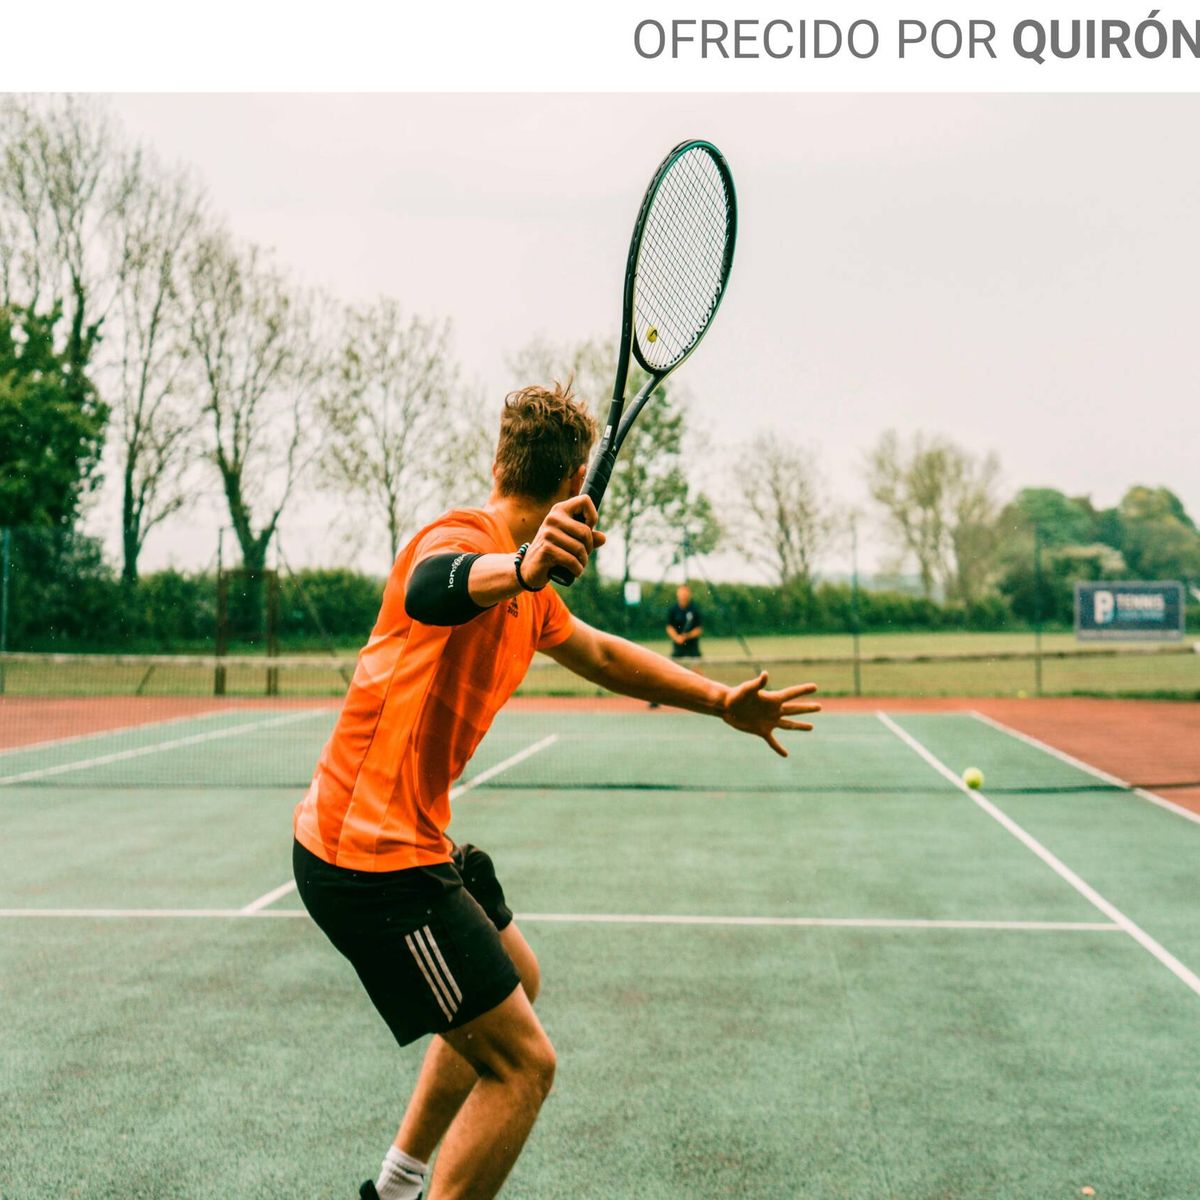 Jugar al tenis: descubre los beneficios del tenis para la salud